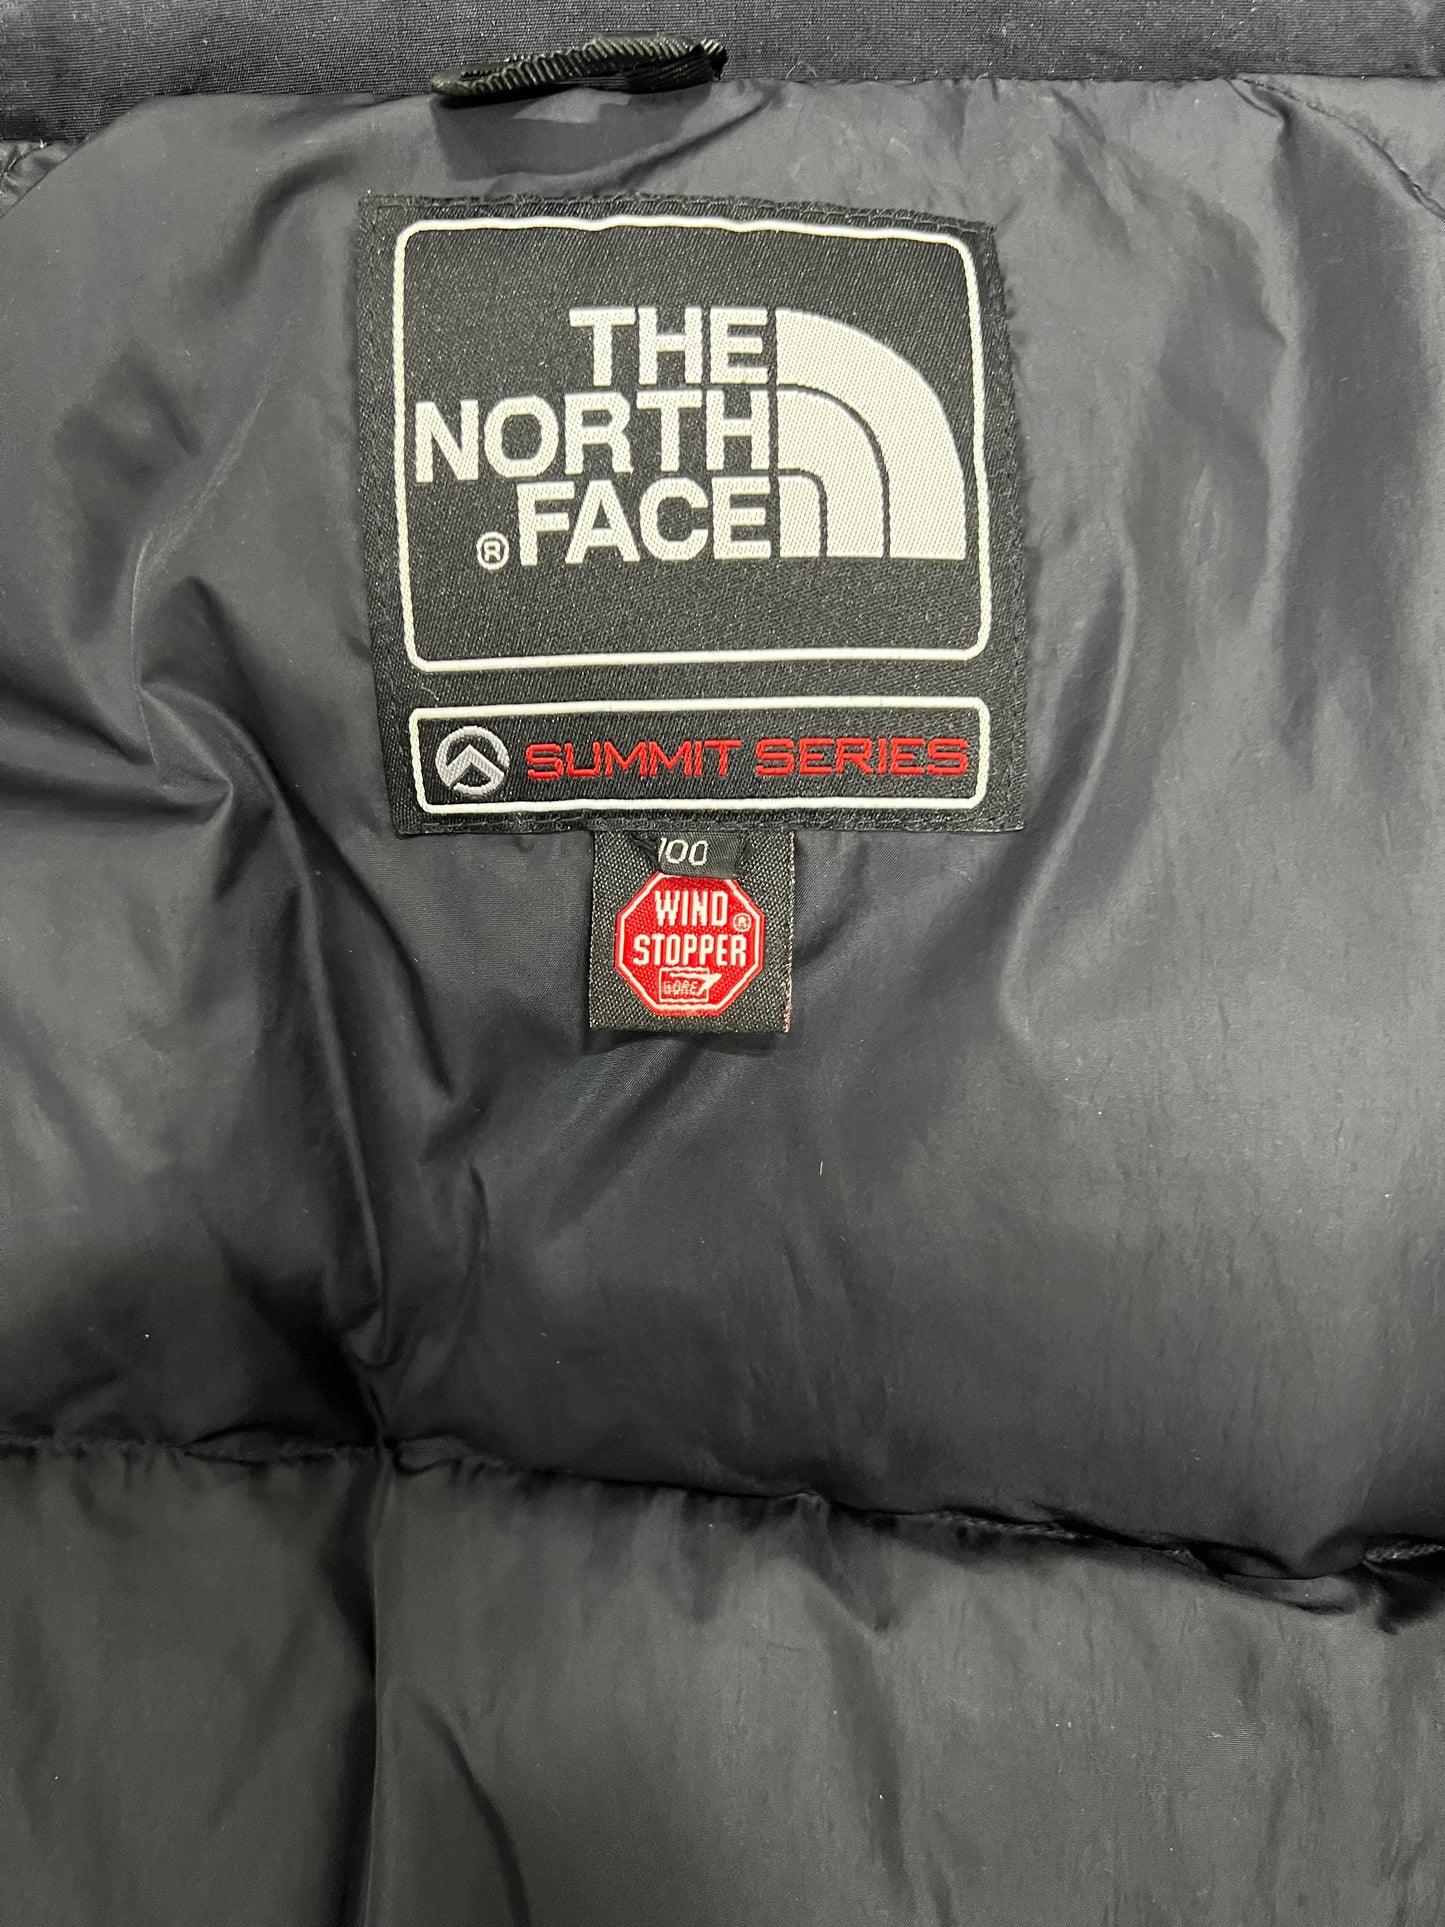 10063【THE NORTH FACE】ザノースフェイス メンズ サミットシリーズ バルトロ ダウンジャケット 700フィル ブラック 100